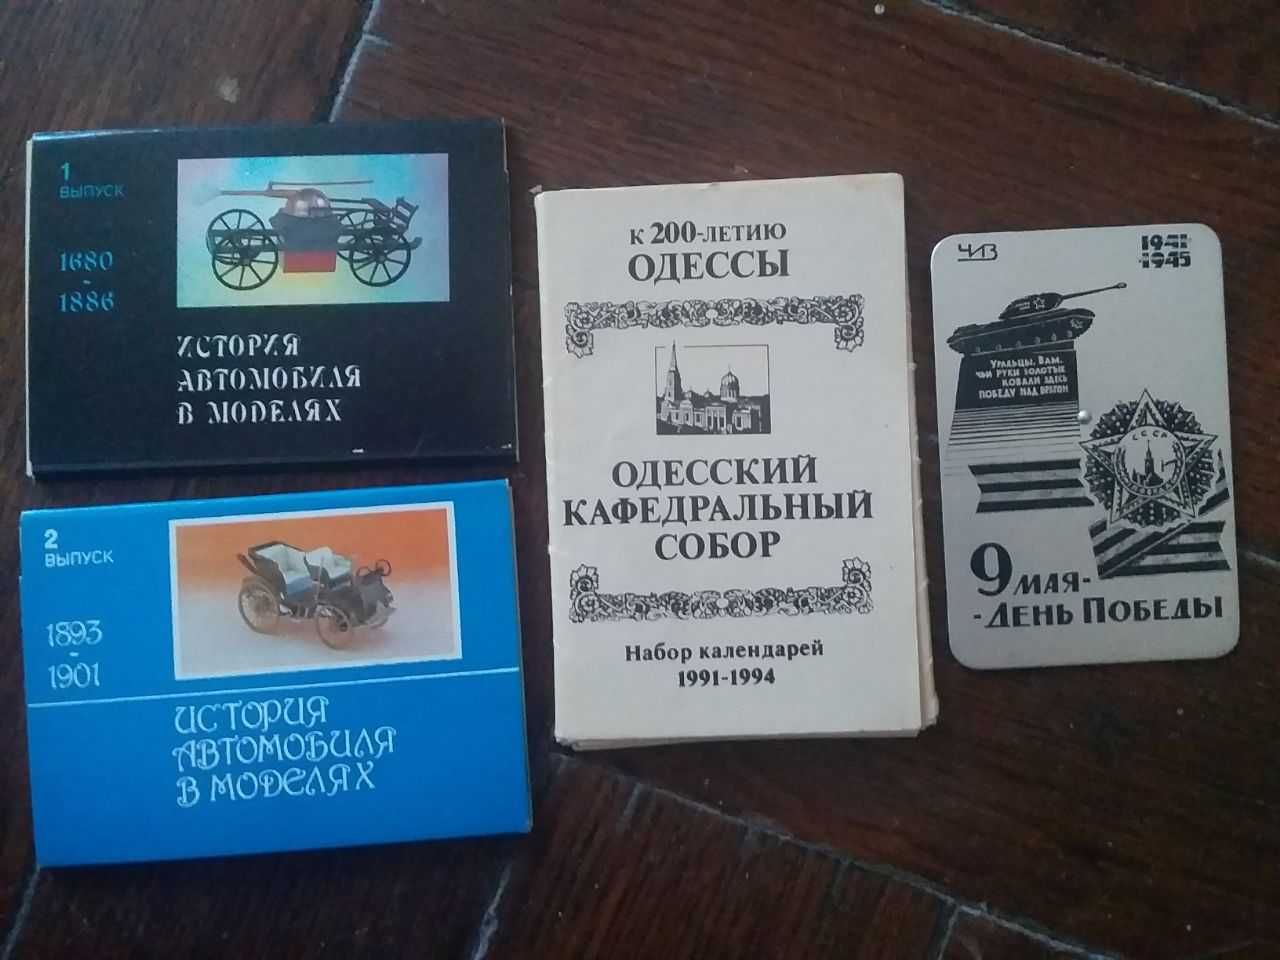 Кармані календарі часів СССР/УССР